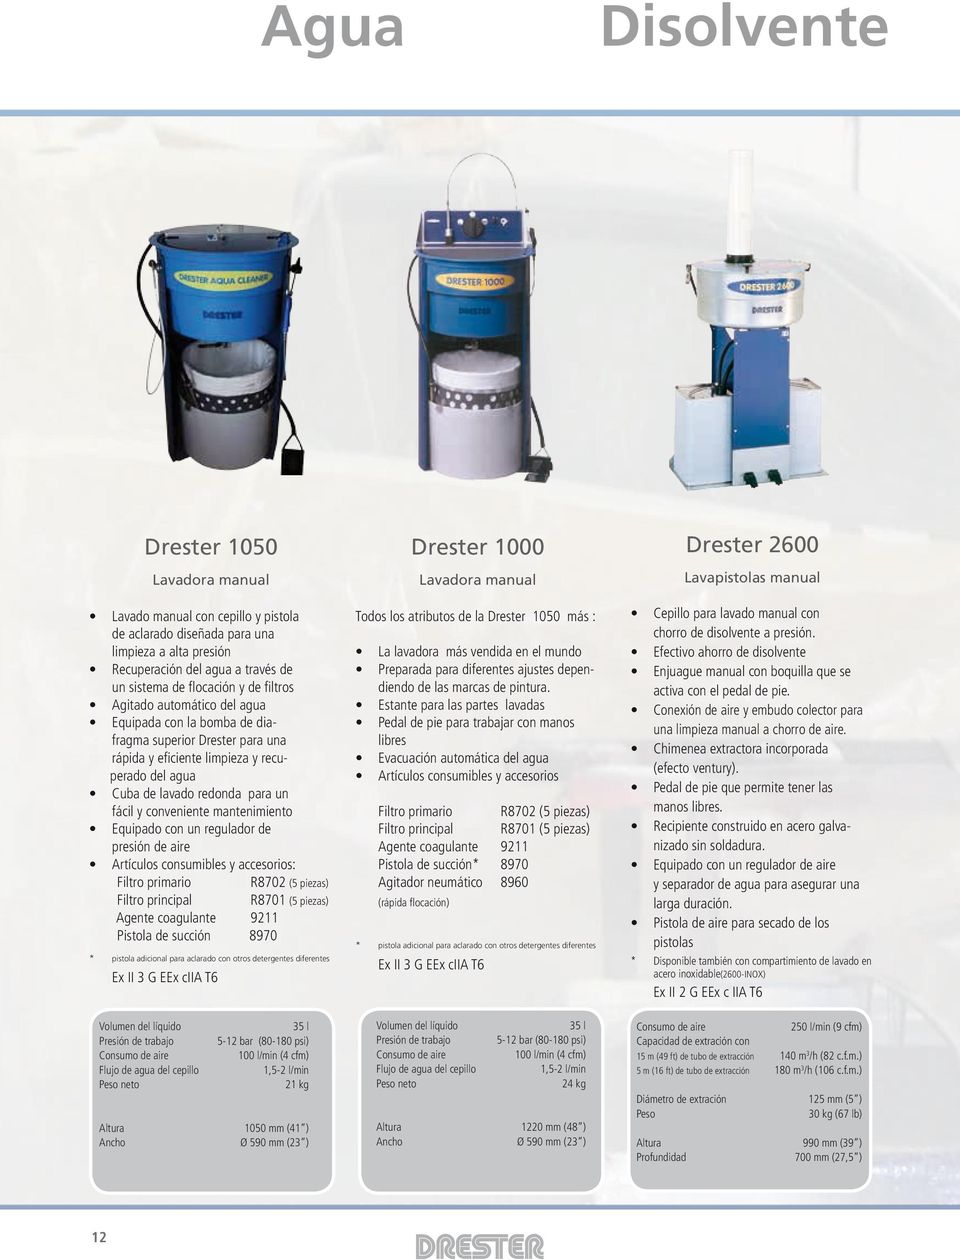 recuperado del agua Cuba de lavado redonda para un fácil y conveniente mantenimiento Equipado con un regulador de presión de aire Artículos consumibles y accesorios: Filtro primario R8702 (5 piezas)